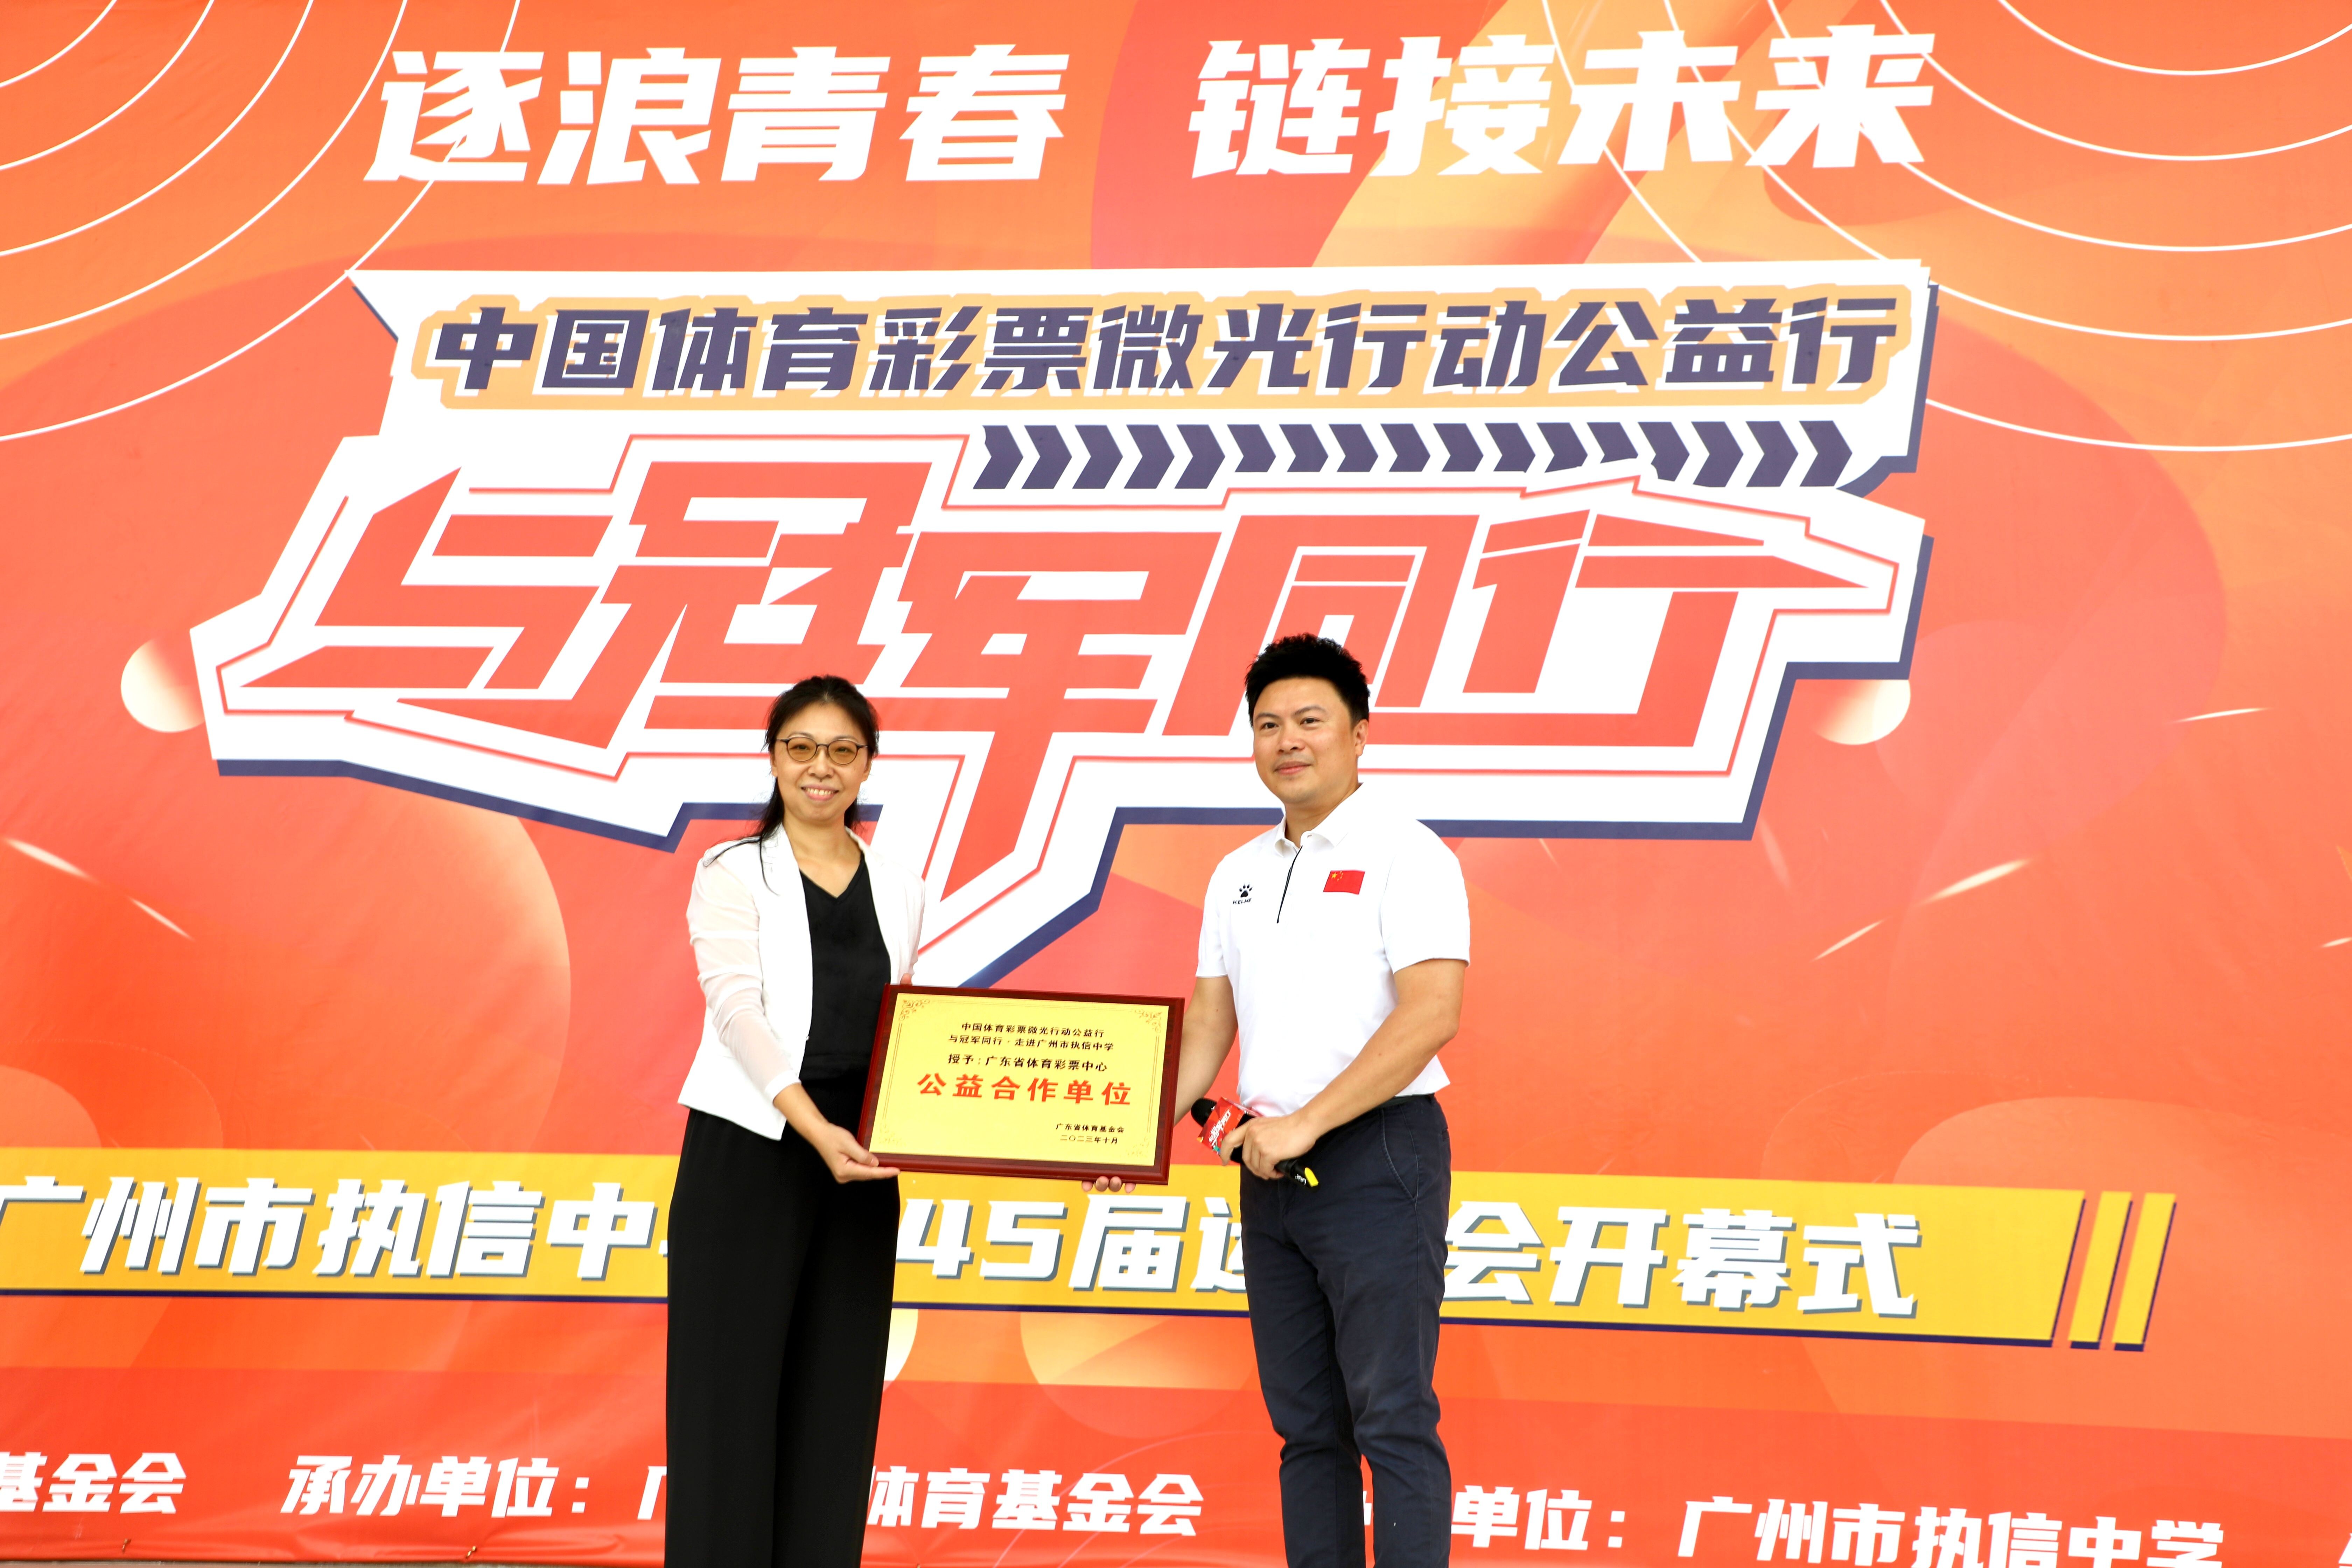 广东省体育彩票中心被授予公益合作单位